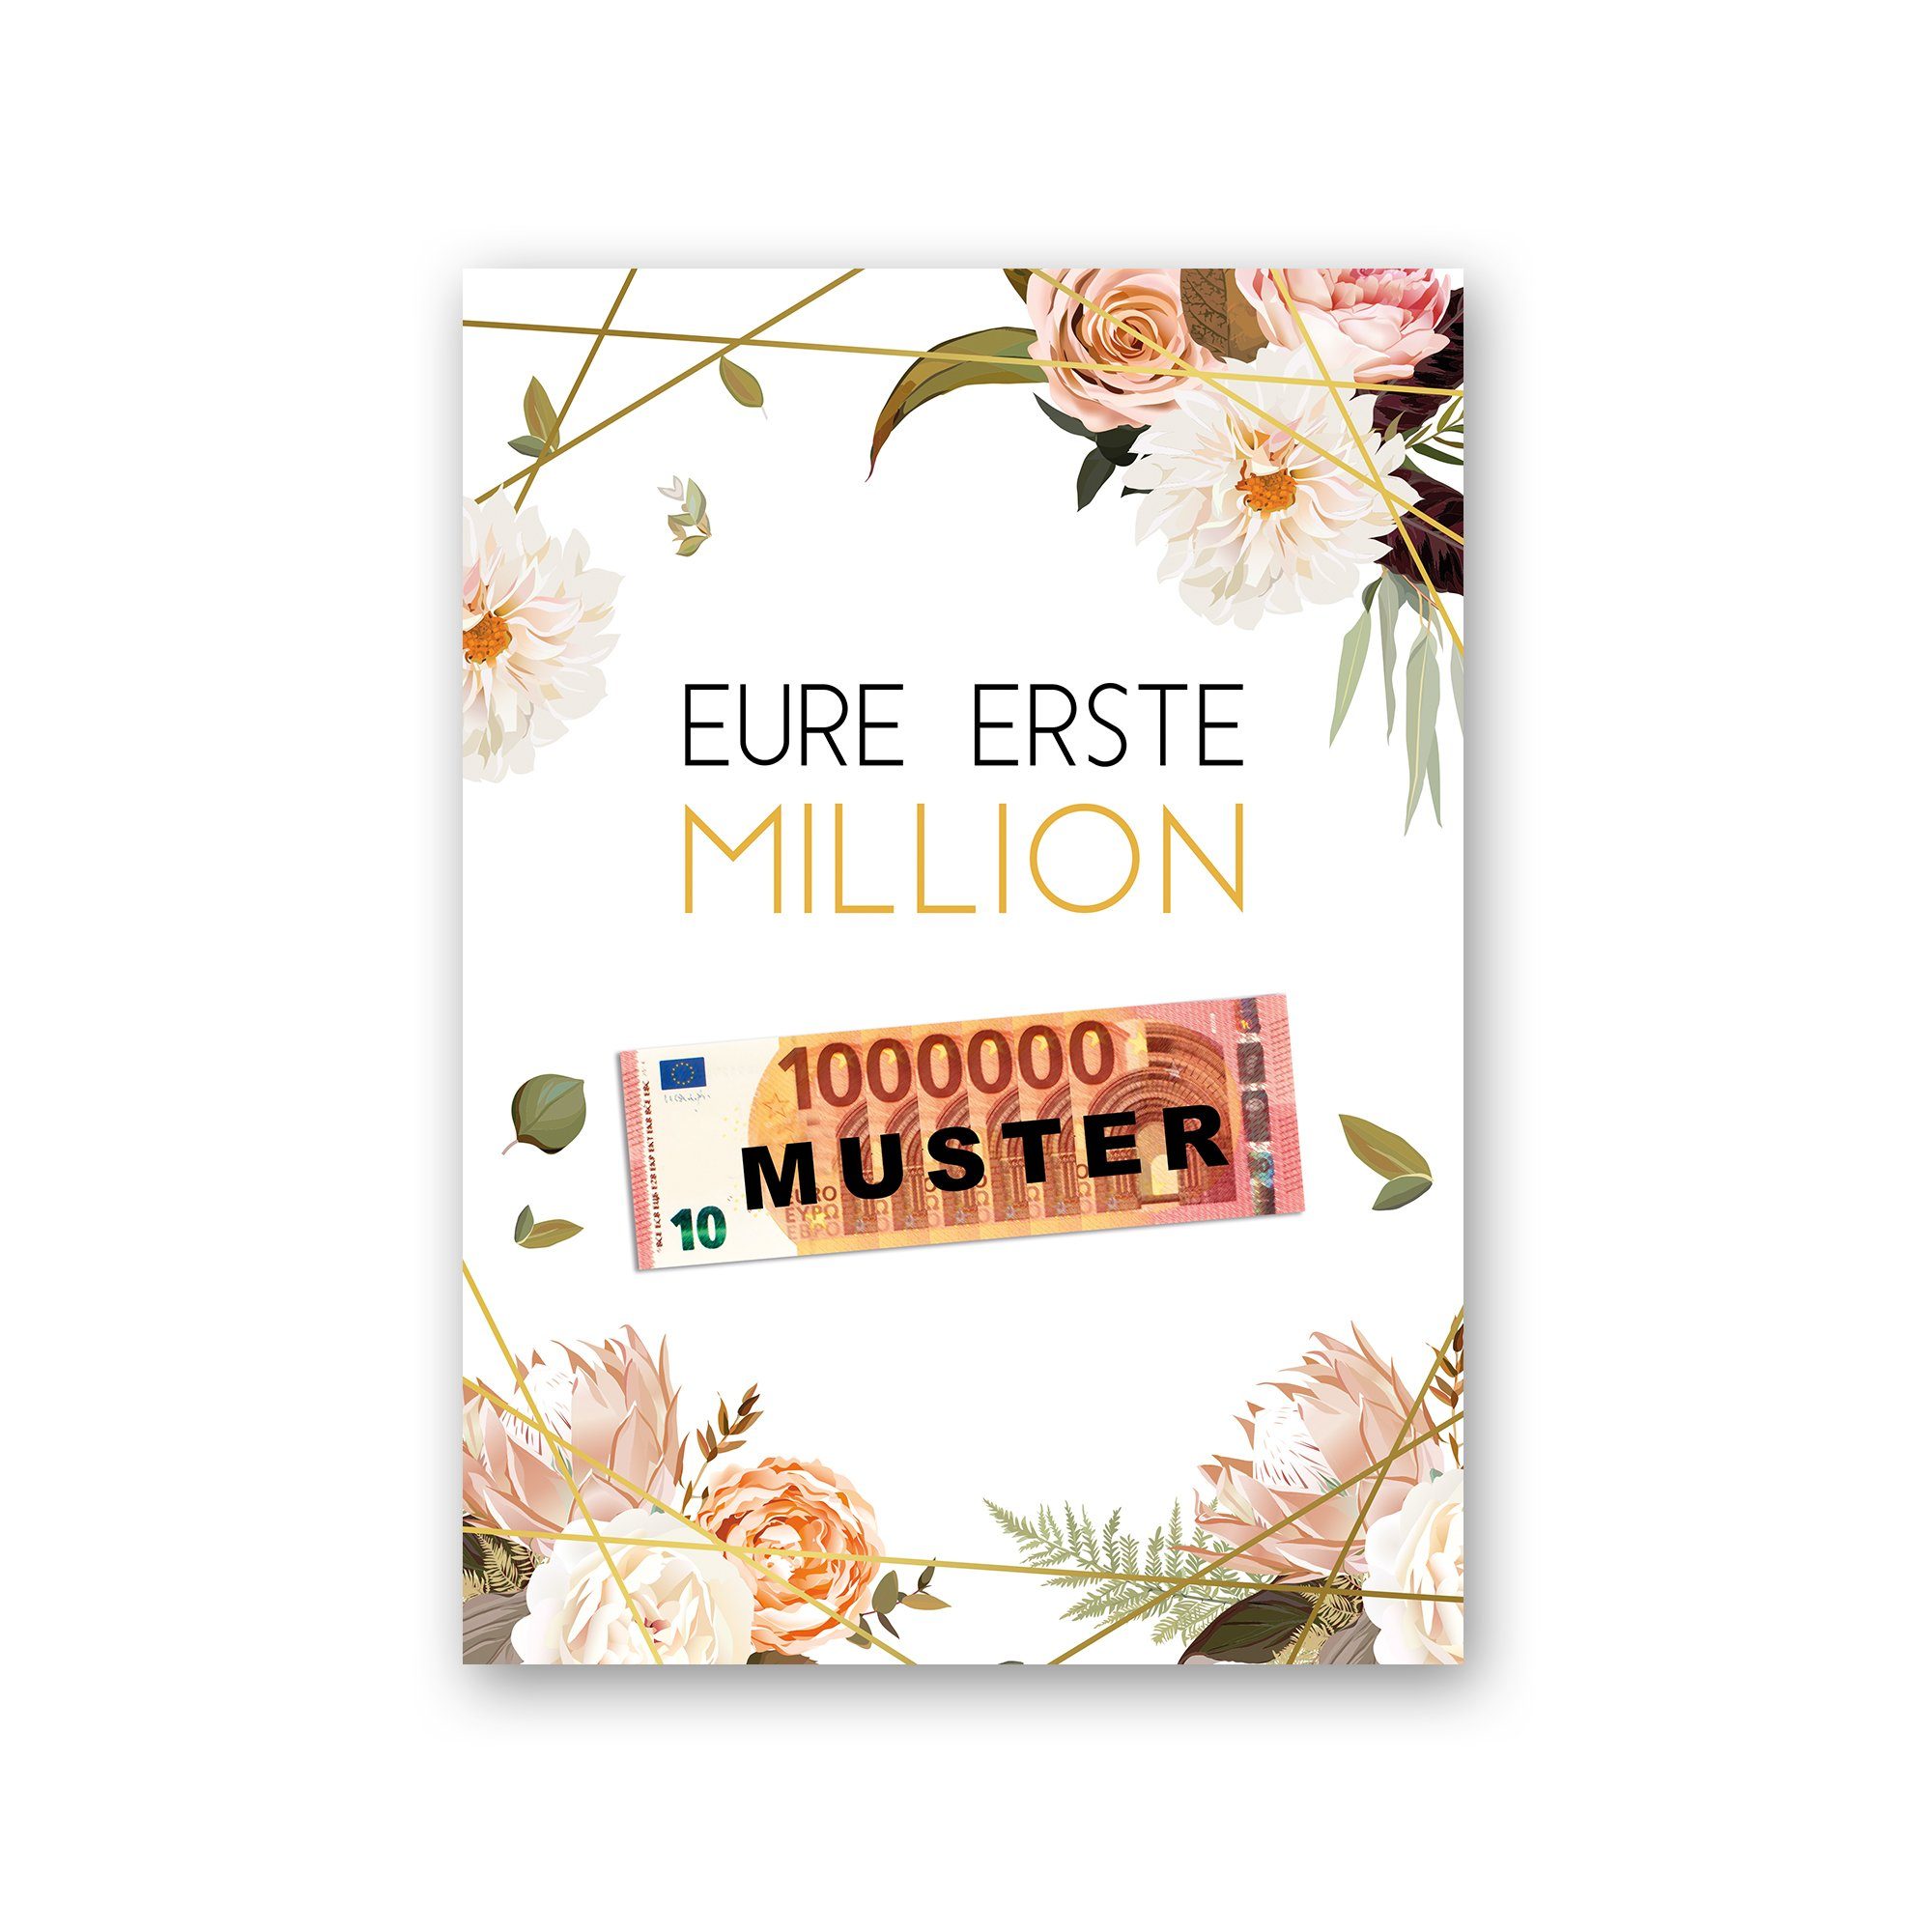 Kreative Feder Poster Premium Poster „Eure erste Million“ - Kunstdruck mit Rosen-Design, Blumen, optional mit Rahmen; wahlweise DIN A4 oder DIN A3 ohne Rahmen